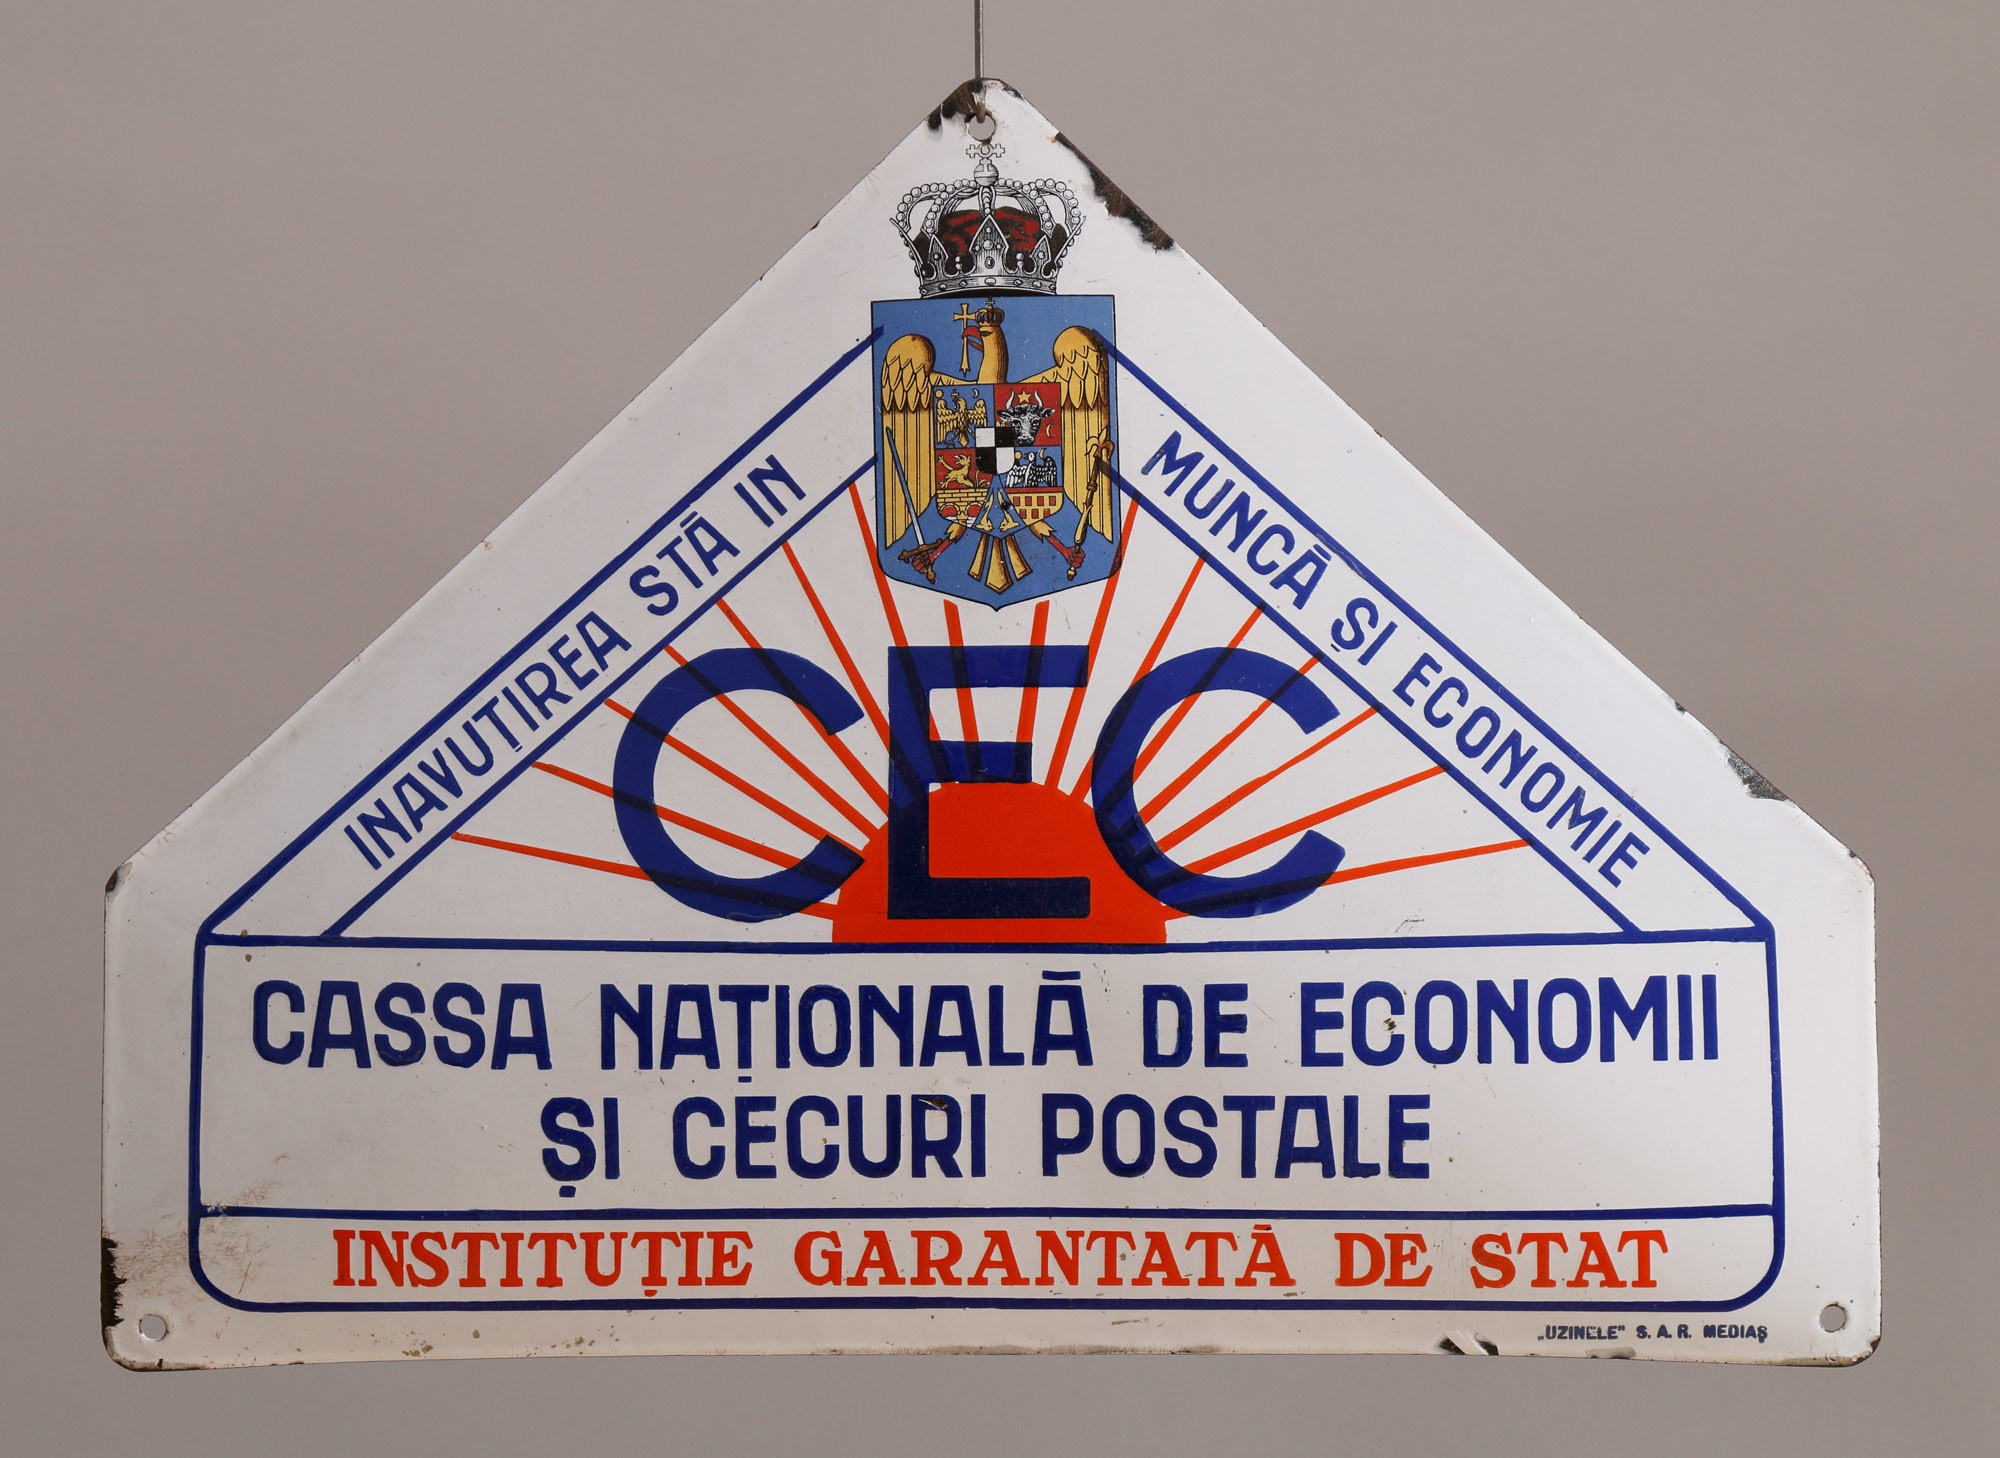 Címertábla „INAVUTIREA IN MUNCÁ ŞI ECONOMIE” "CASSA NATIONALÁ DE ECONOMII ŞI DEDURI POSTALE” „INSTITUTIE GARANTATA DE STAT” (Postamúzeum CC BY-NC-SA)